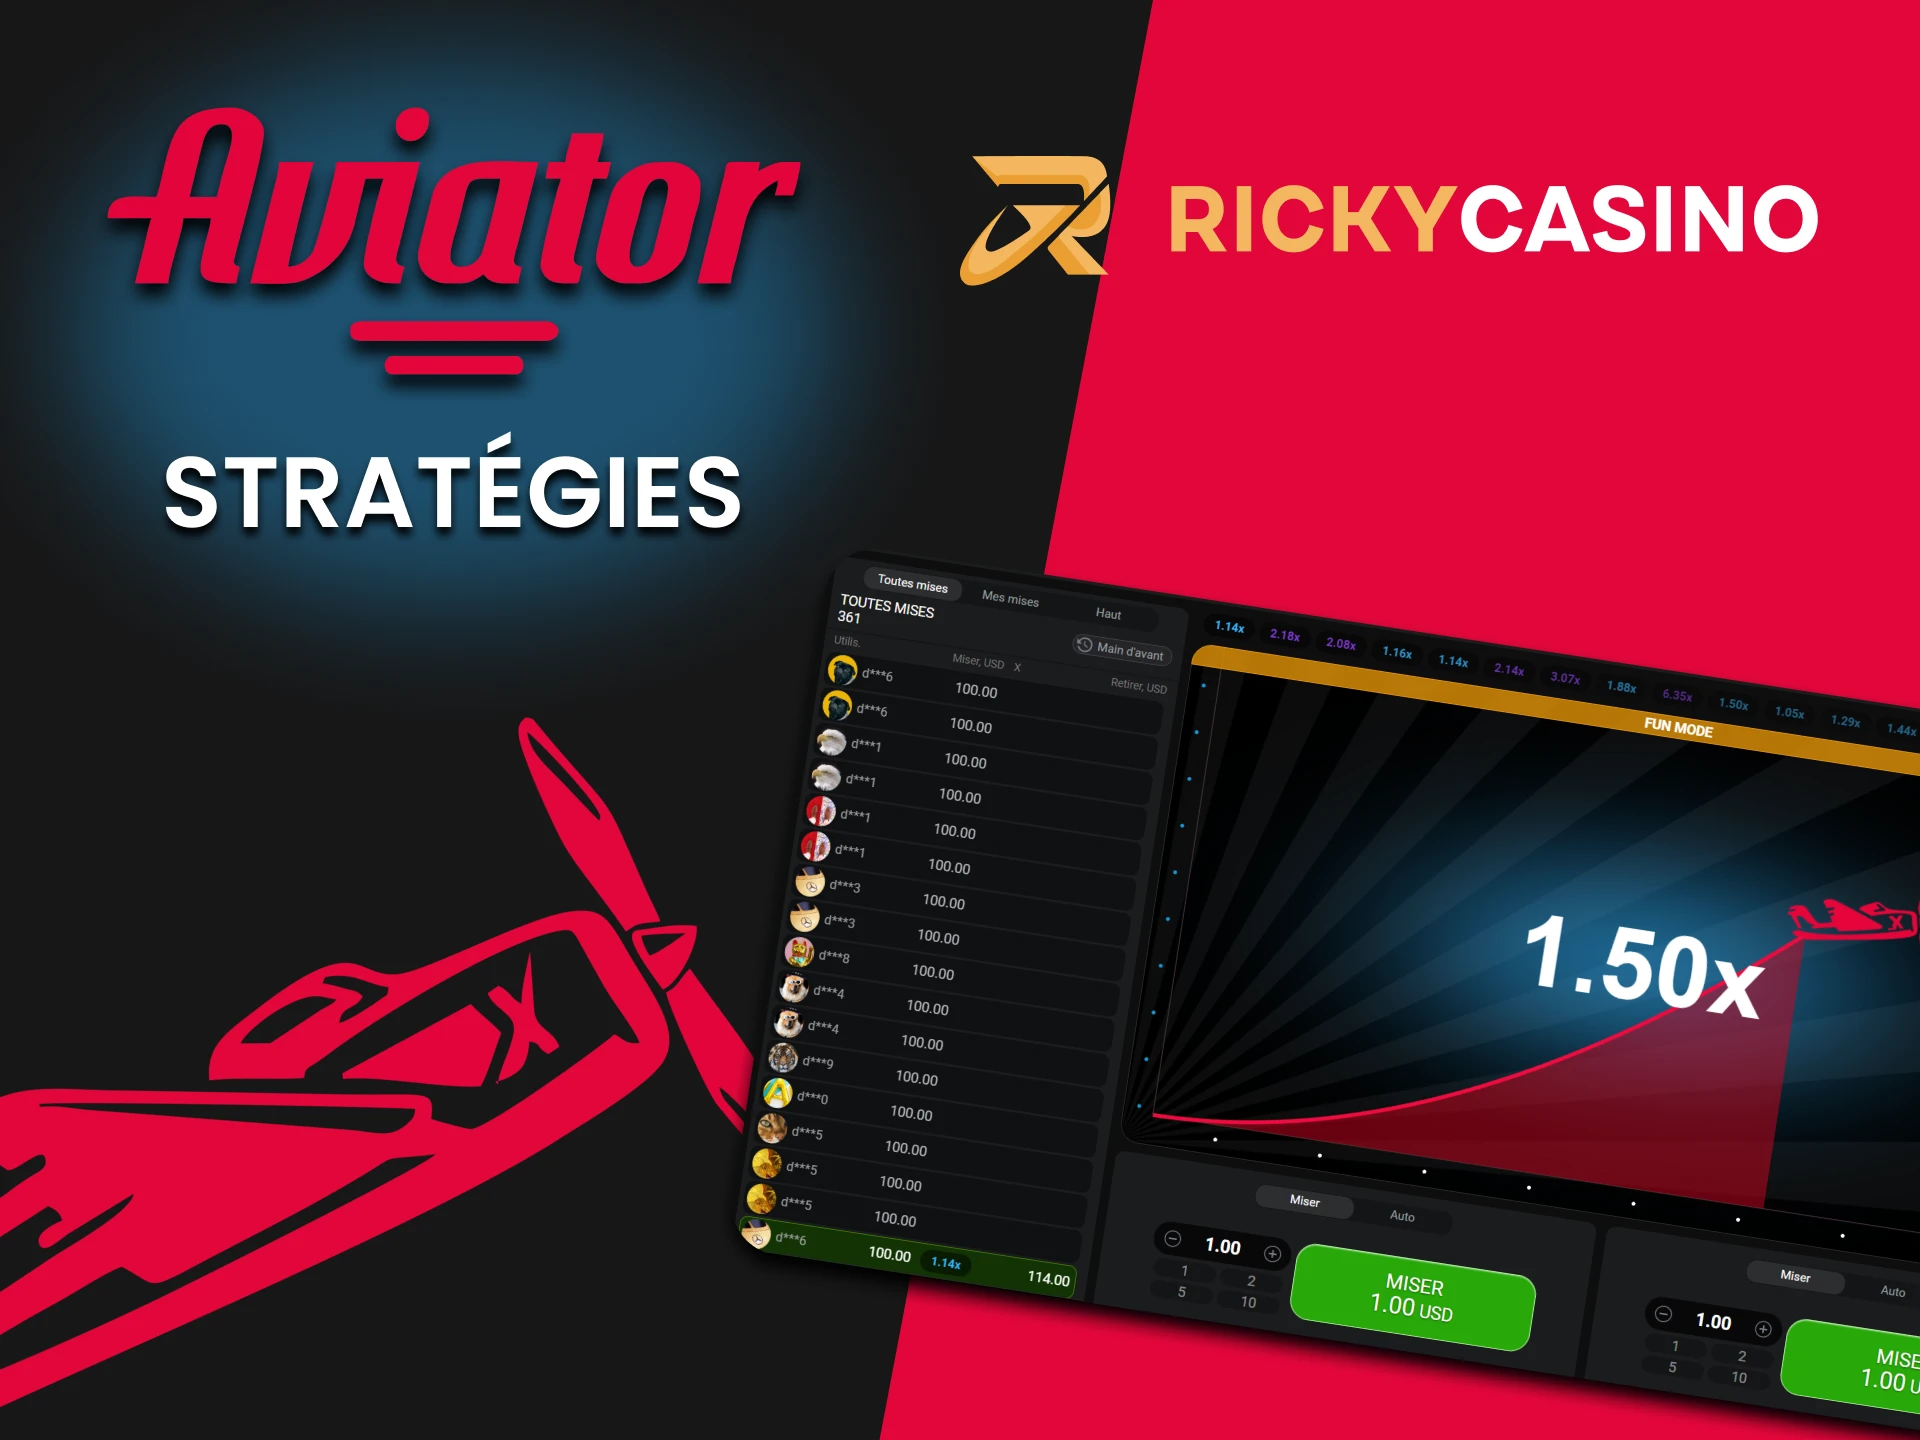 Nous vous montrerons des stratégies gagnantes pour Aviator sur Ricky Casino.